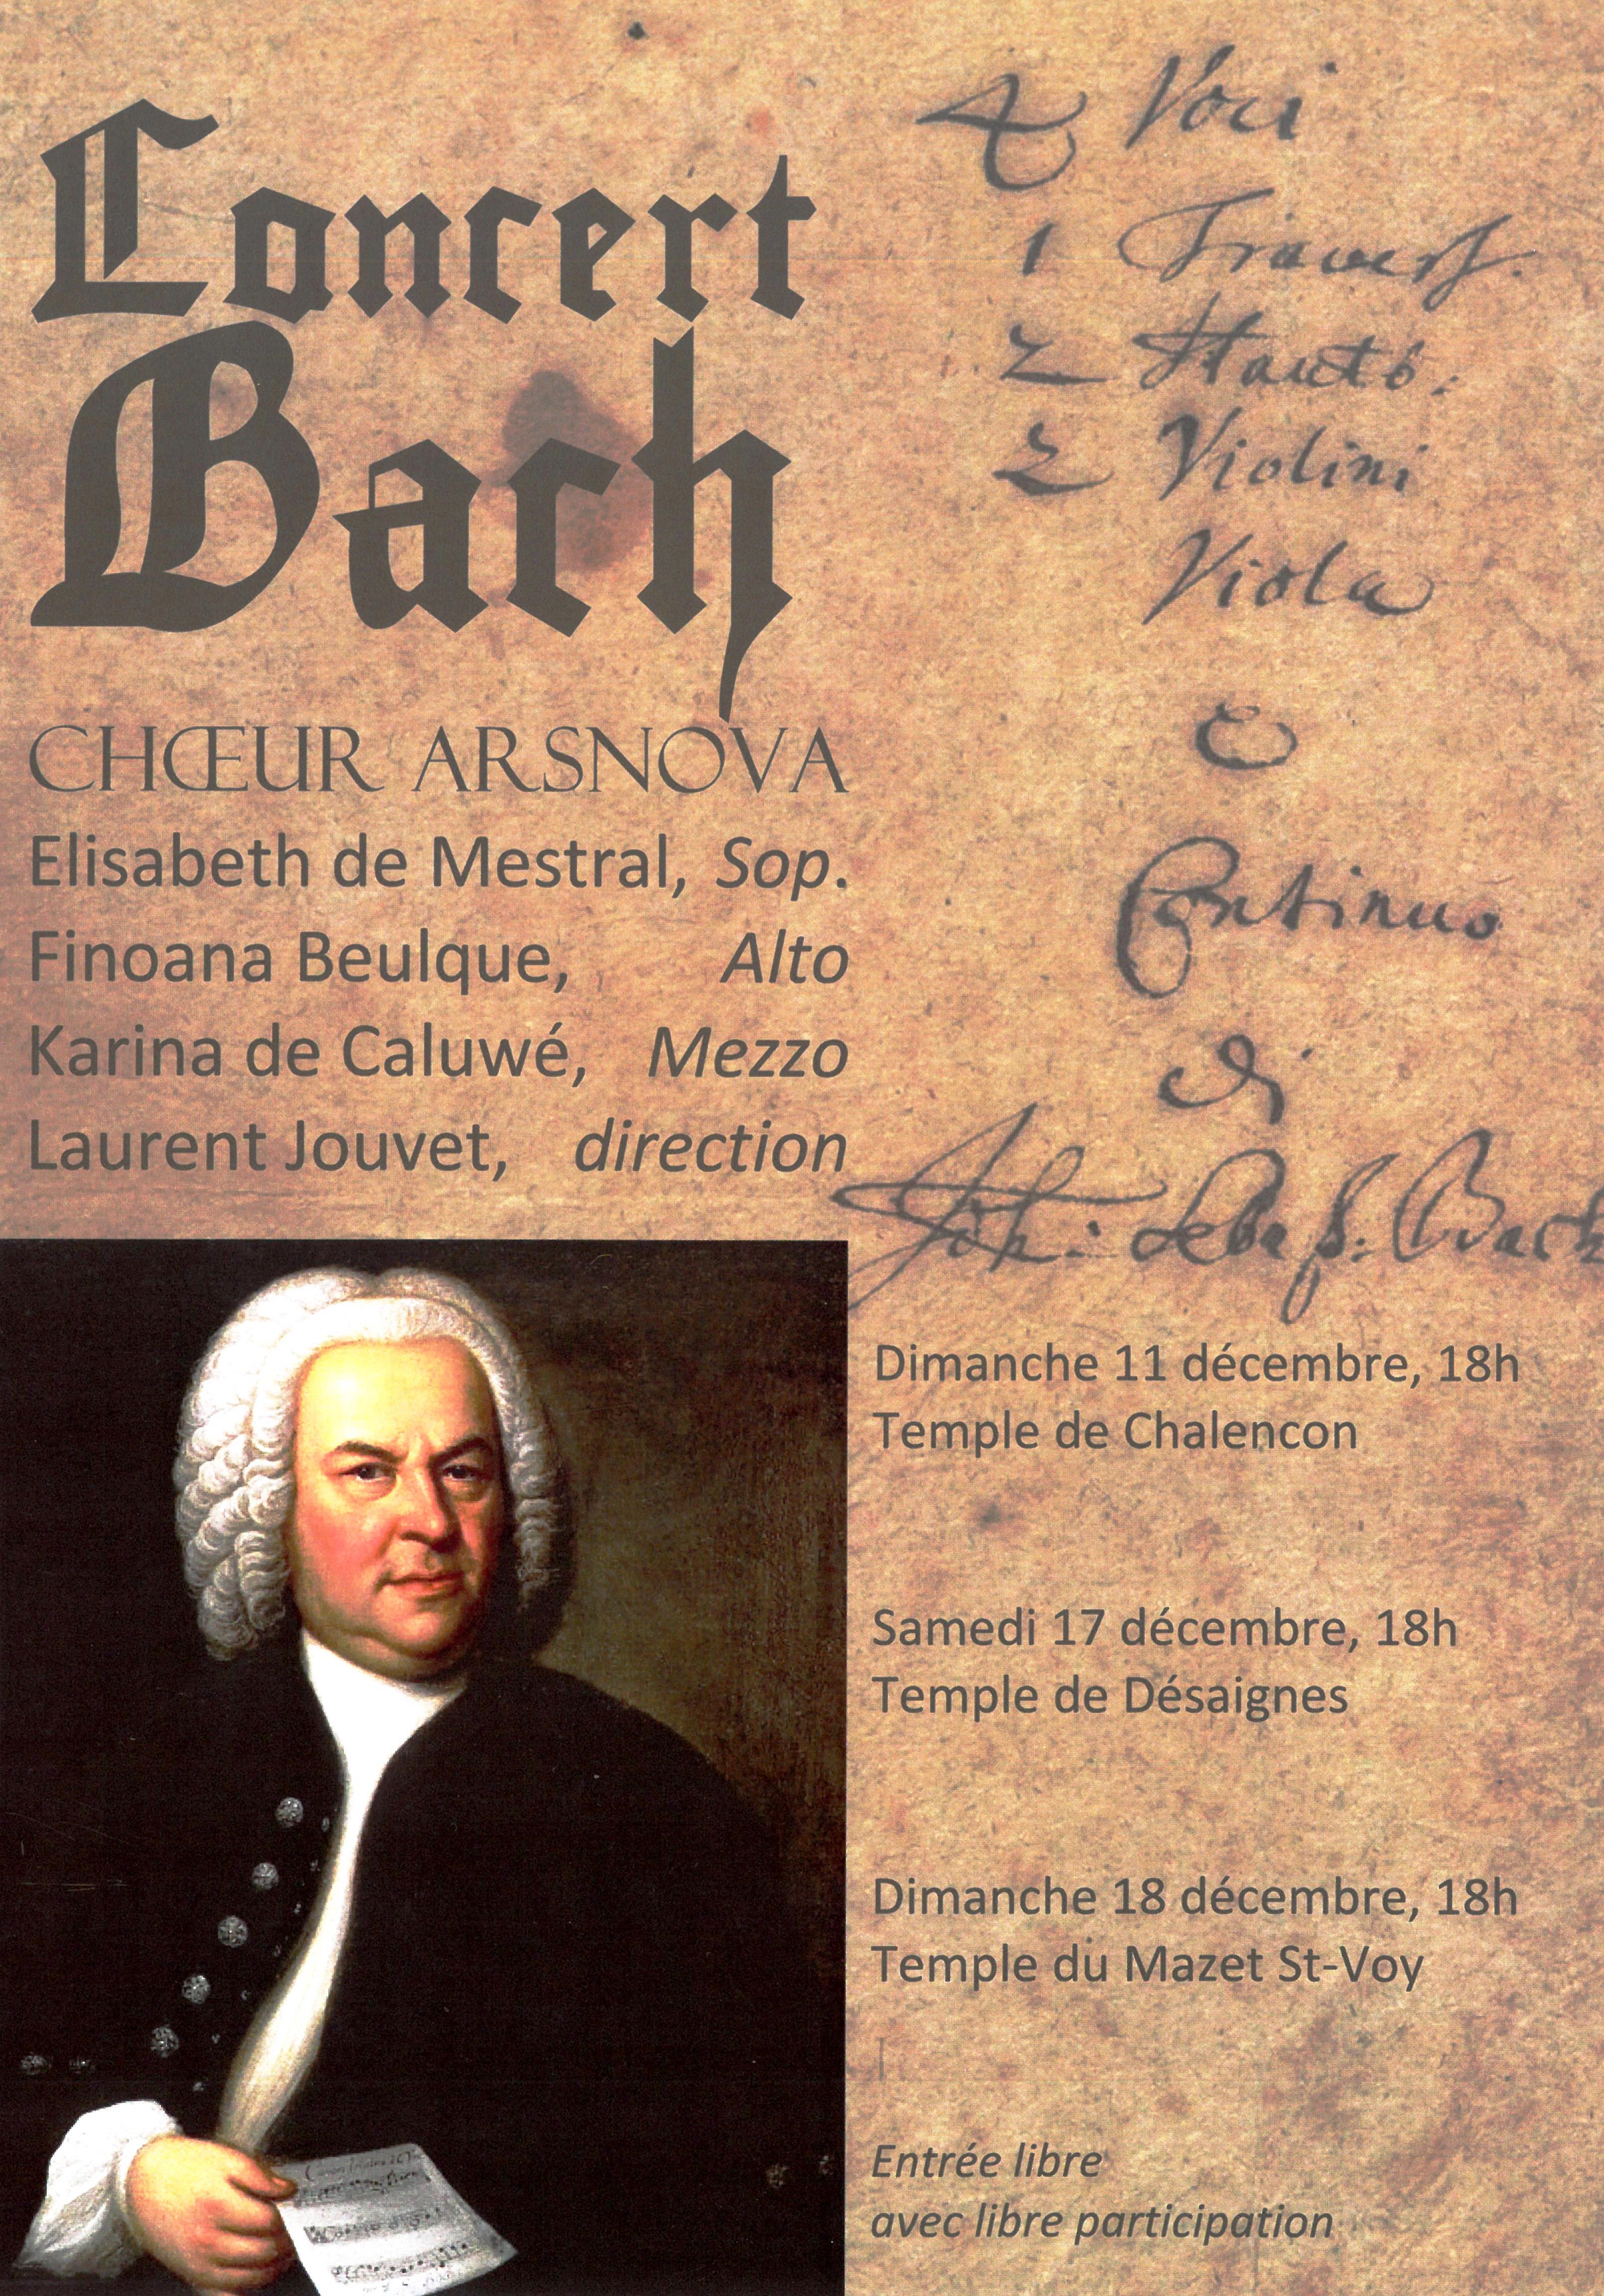 Rendez-vous futés ! : Concert du chœur ArsNova autour d’œuvres de Jean-Sébastien Bach